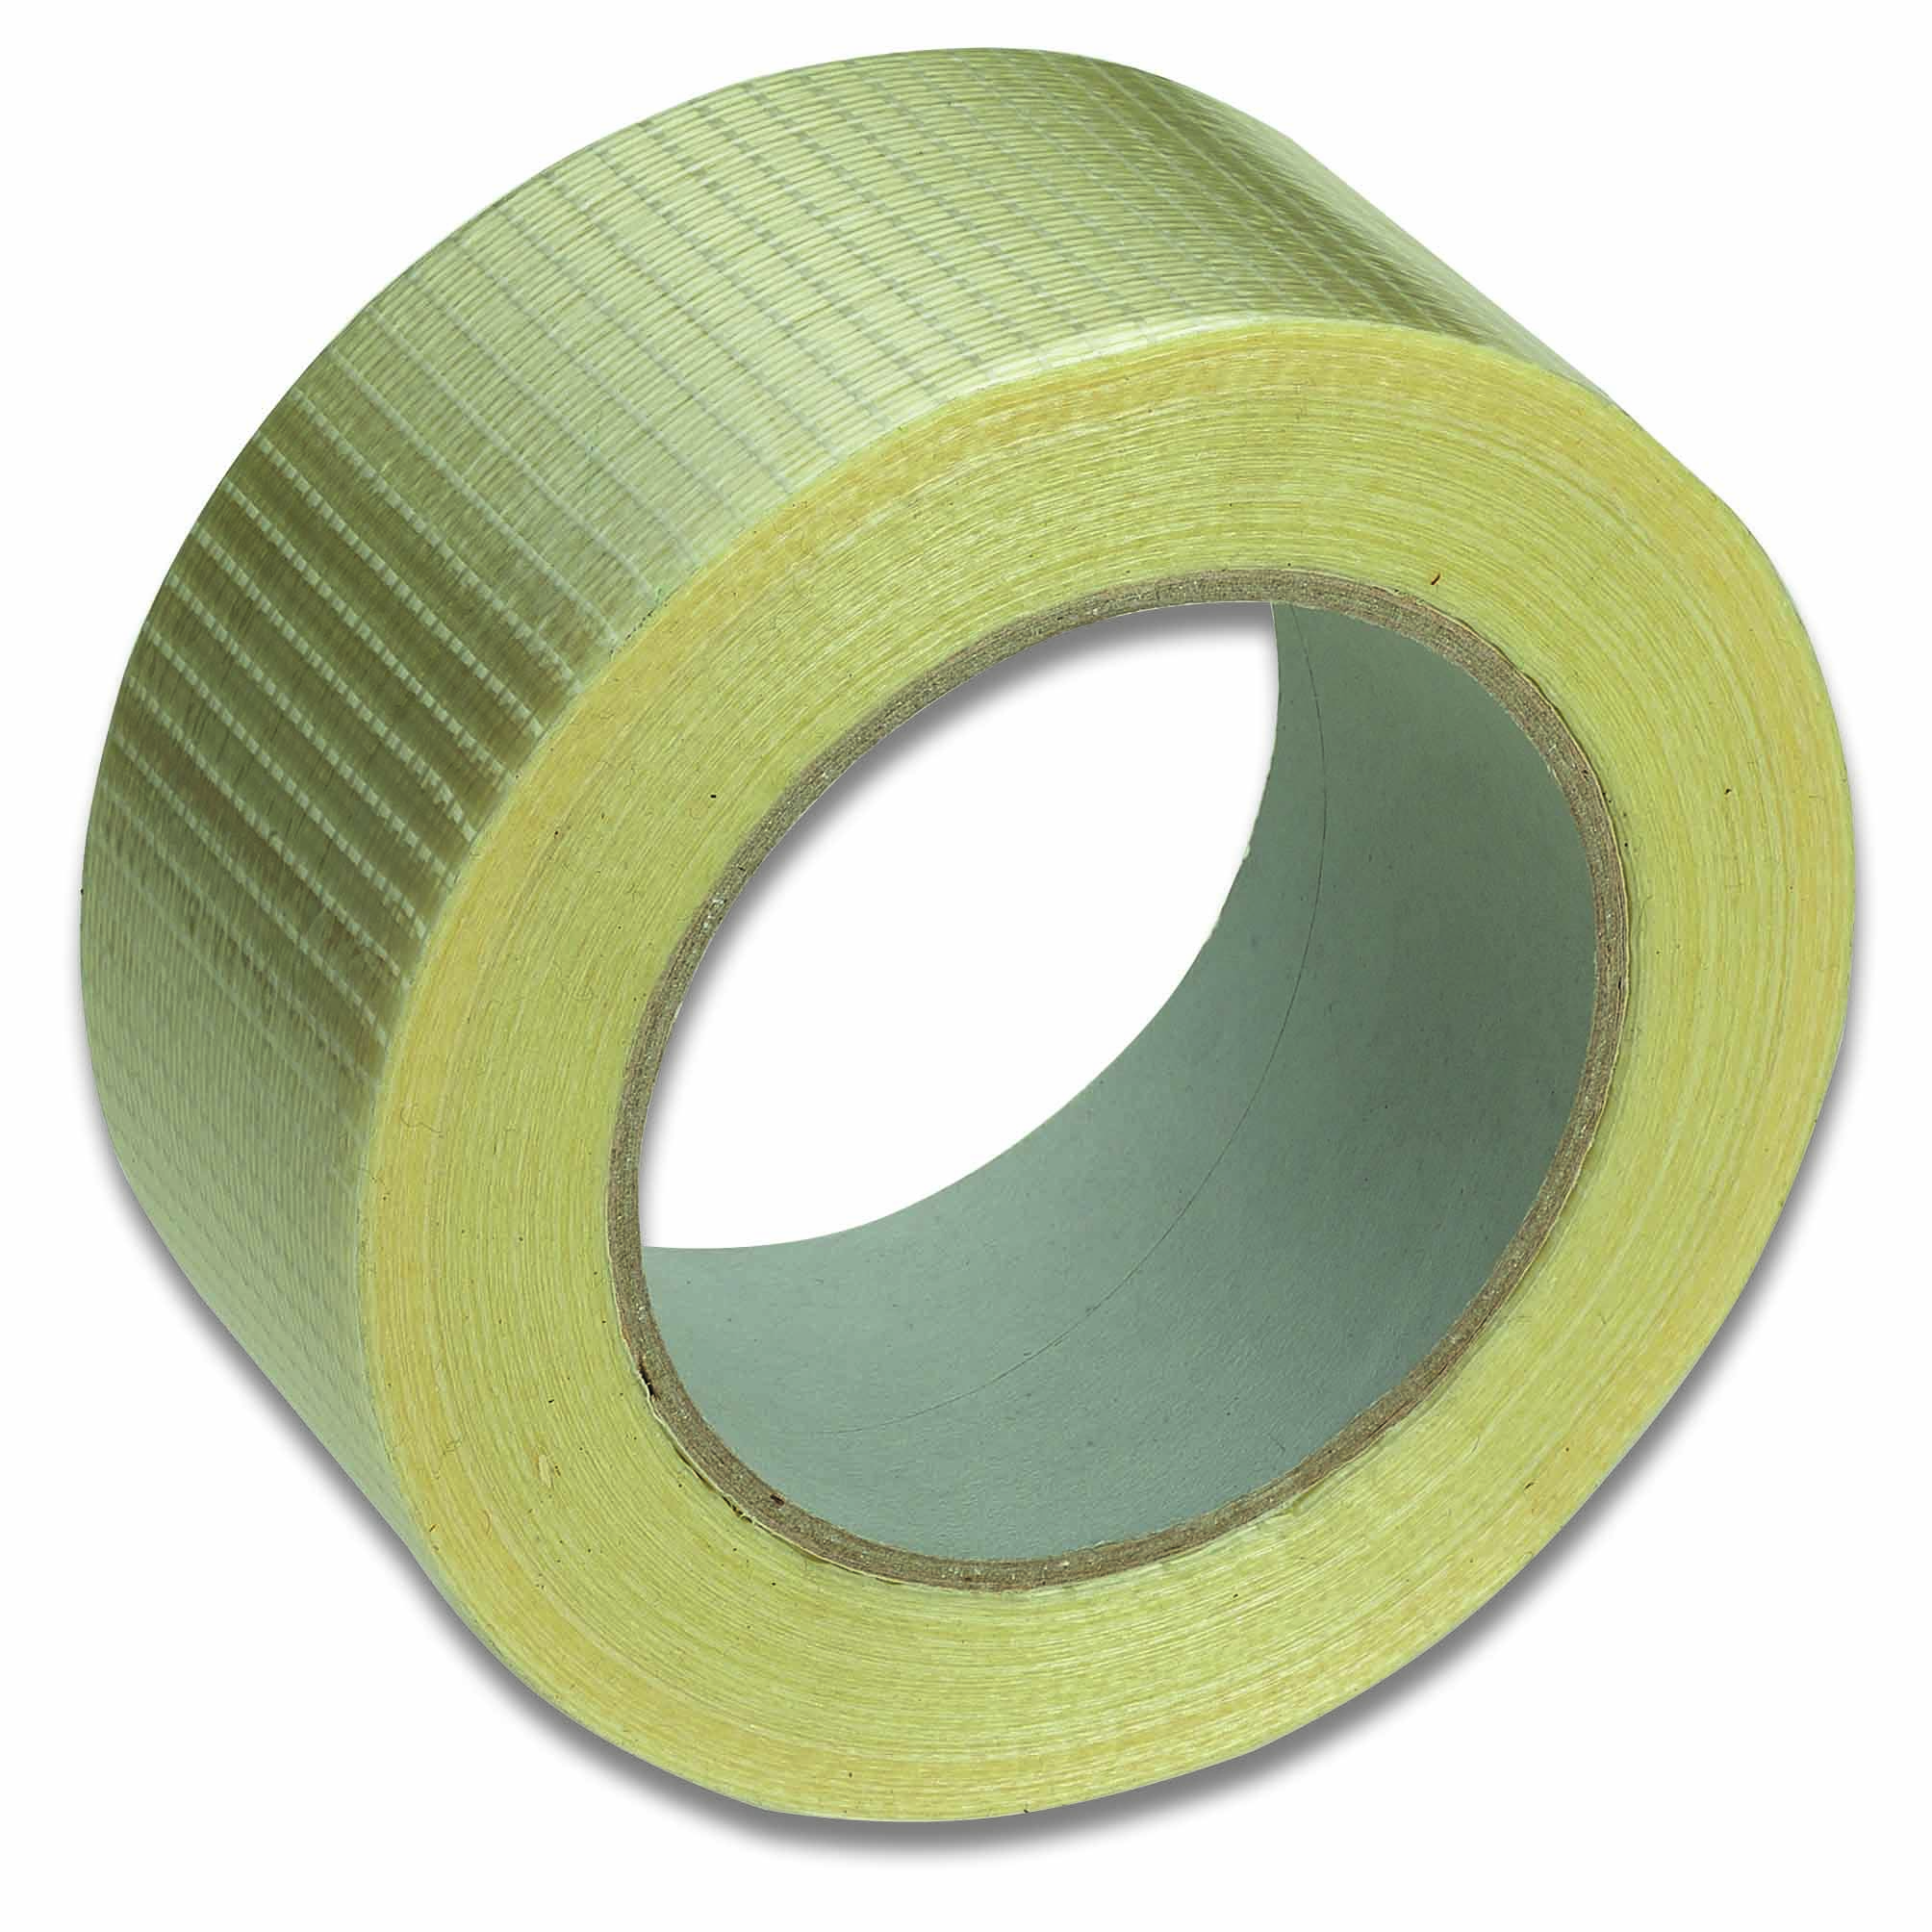  Filament-Tape, 50mm x 50m 